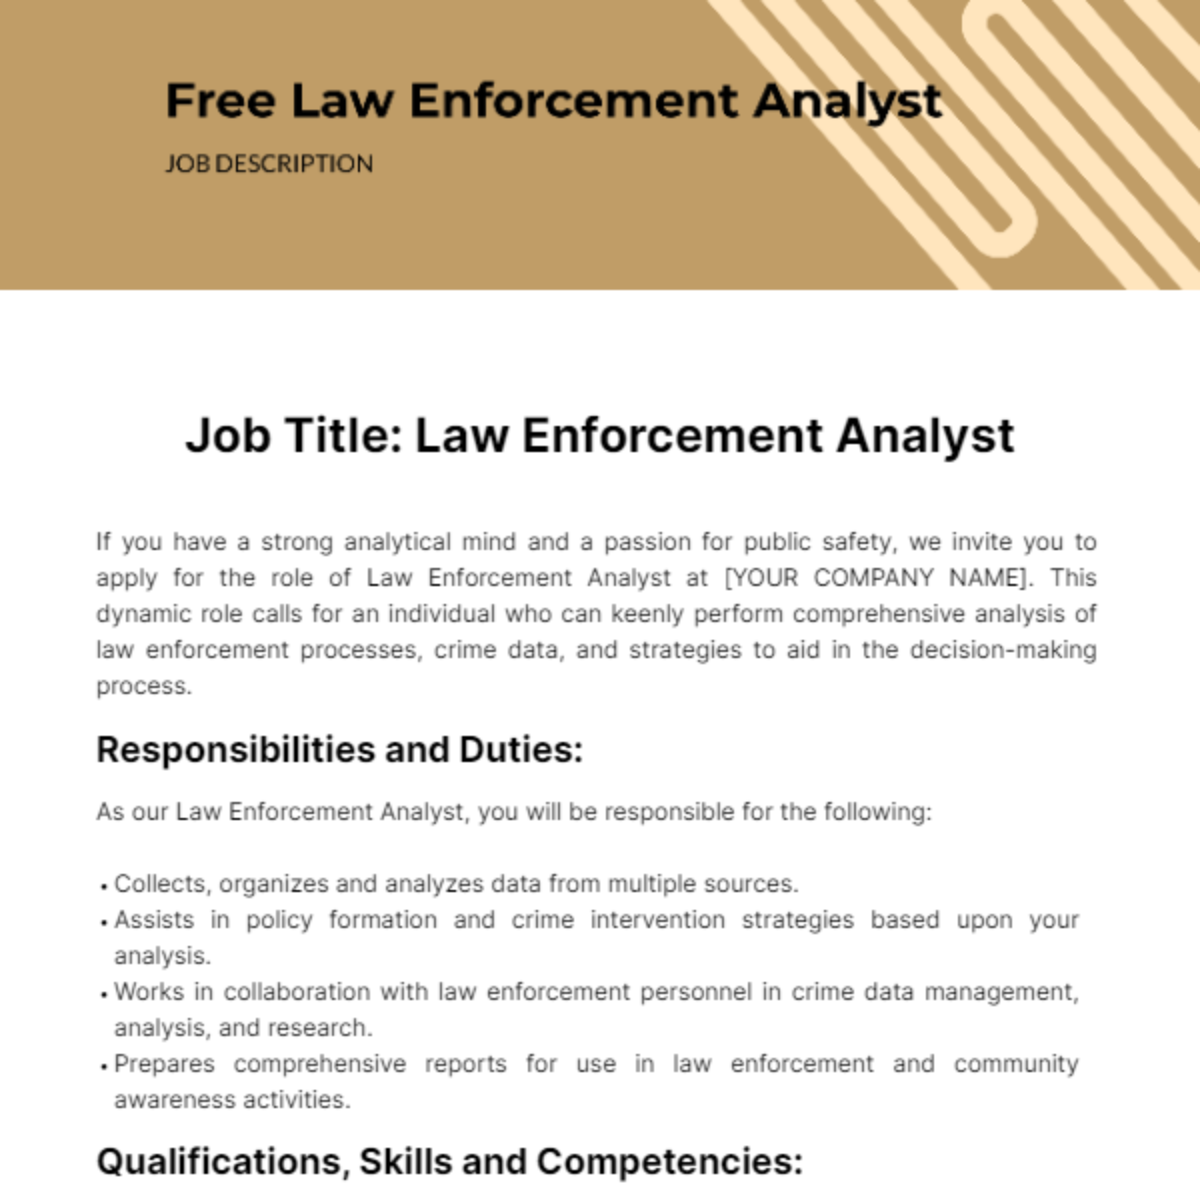 Free Law Enforcement Analyst Job Description Template